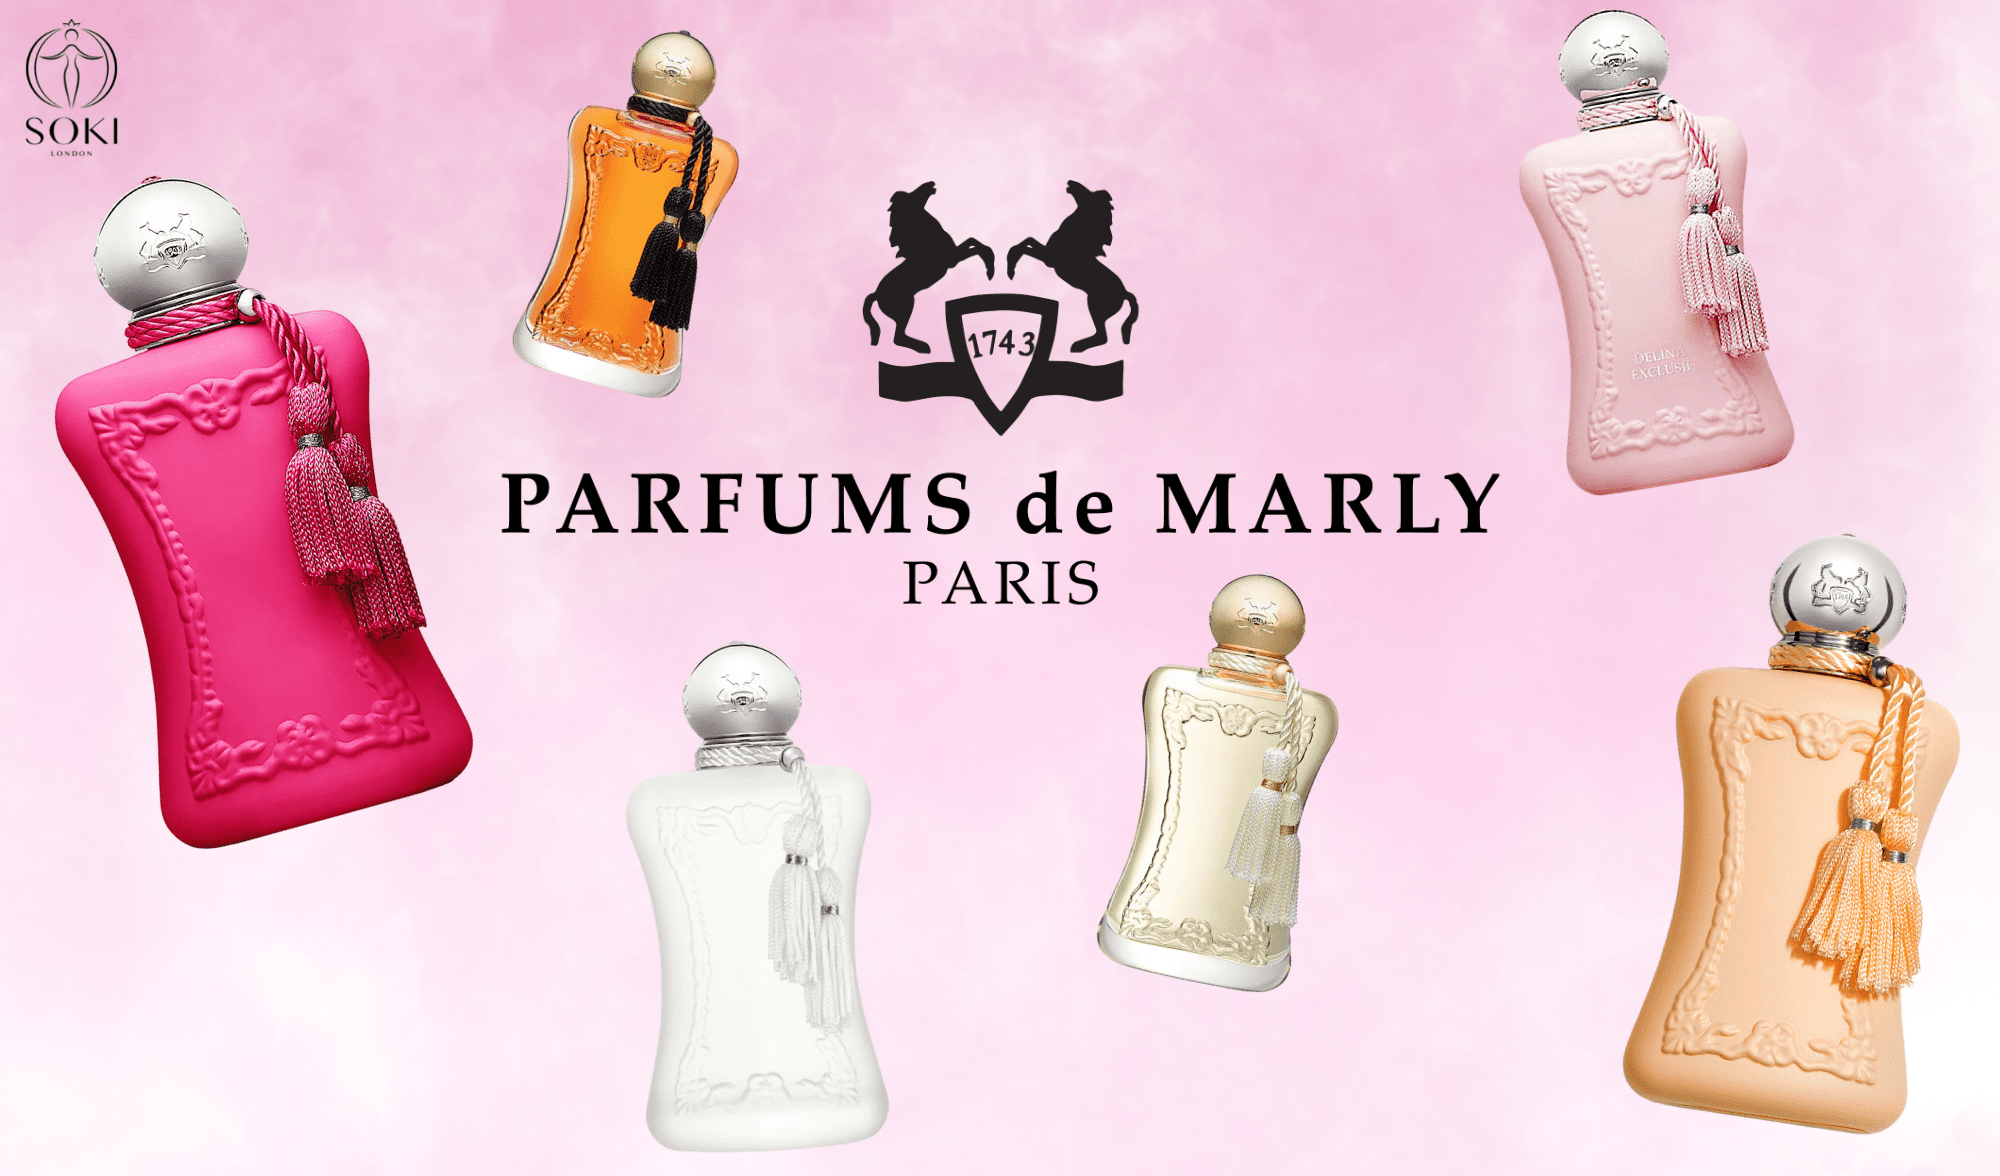 Hướng dẫn về từng loại nước hoa Parfums de Marly